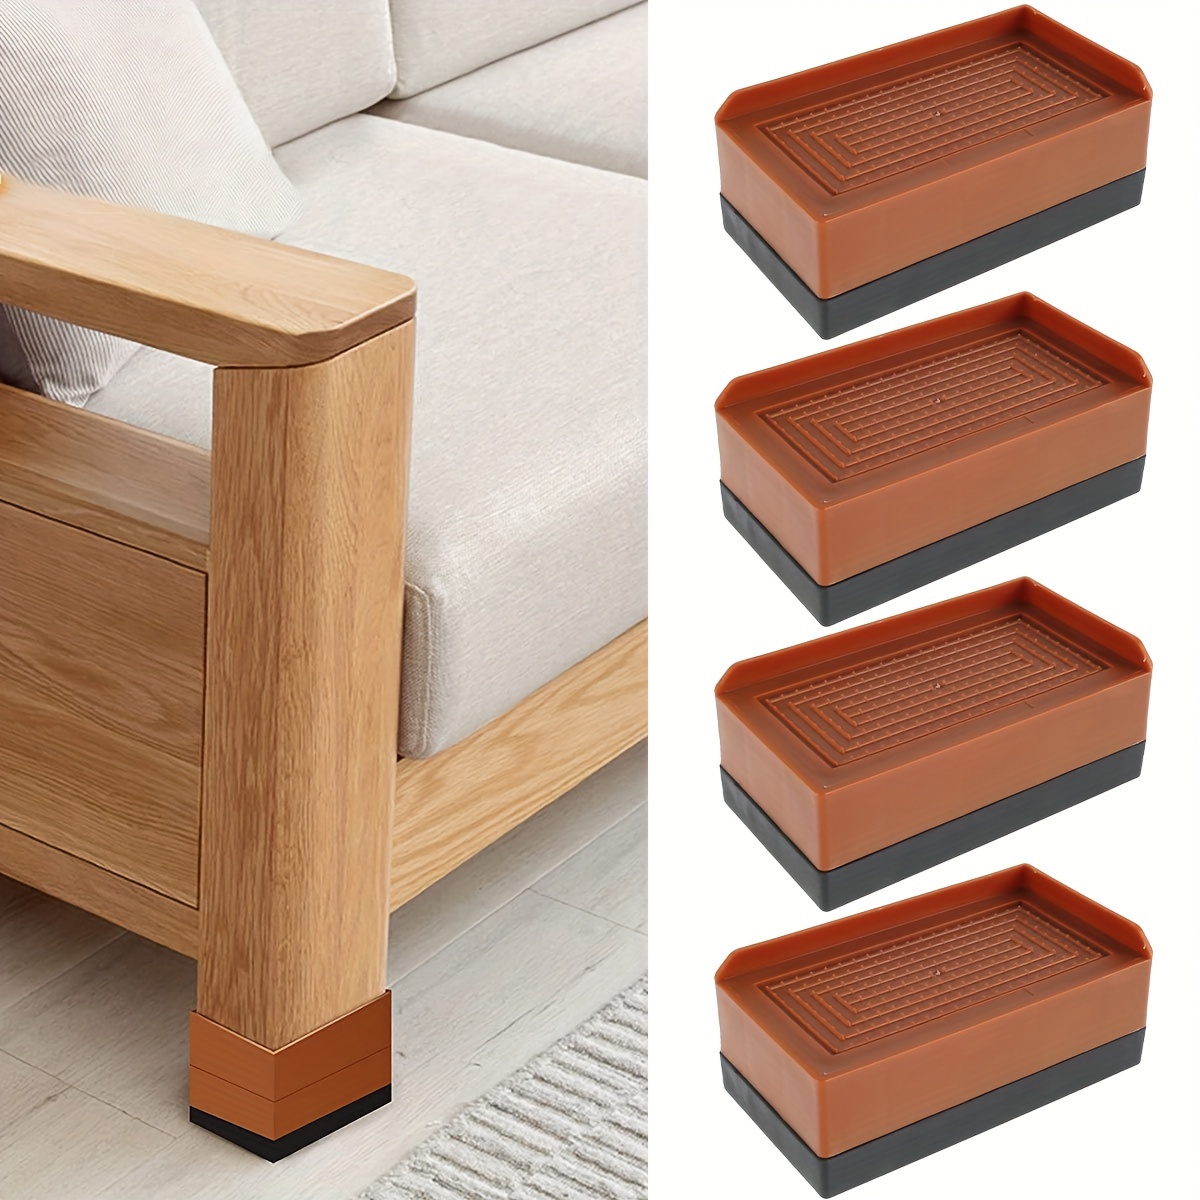  Furnigear - Deslizadores deslizantes para muebles con rosca de  3/4 pulgadas, PTFE (teflón), deslizadores de patas de silla para alfombras  y superficies de madera dura, mueve tus muebles de forma fácil